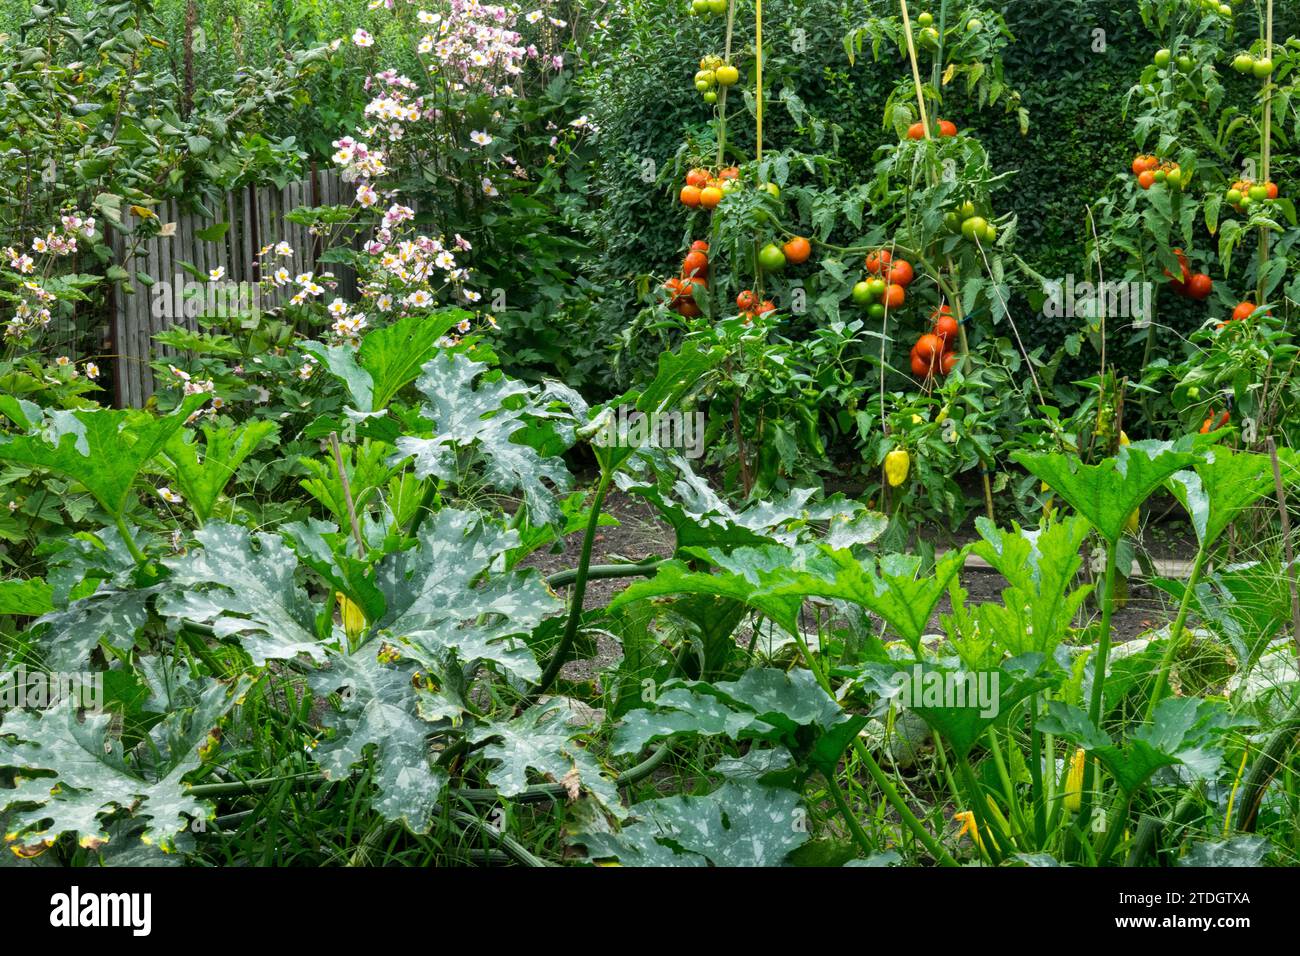 Coltivato, verdura, giardino, riparto, pomodori, piante, in crescita Foto Stock